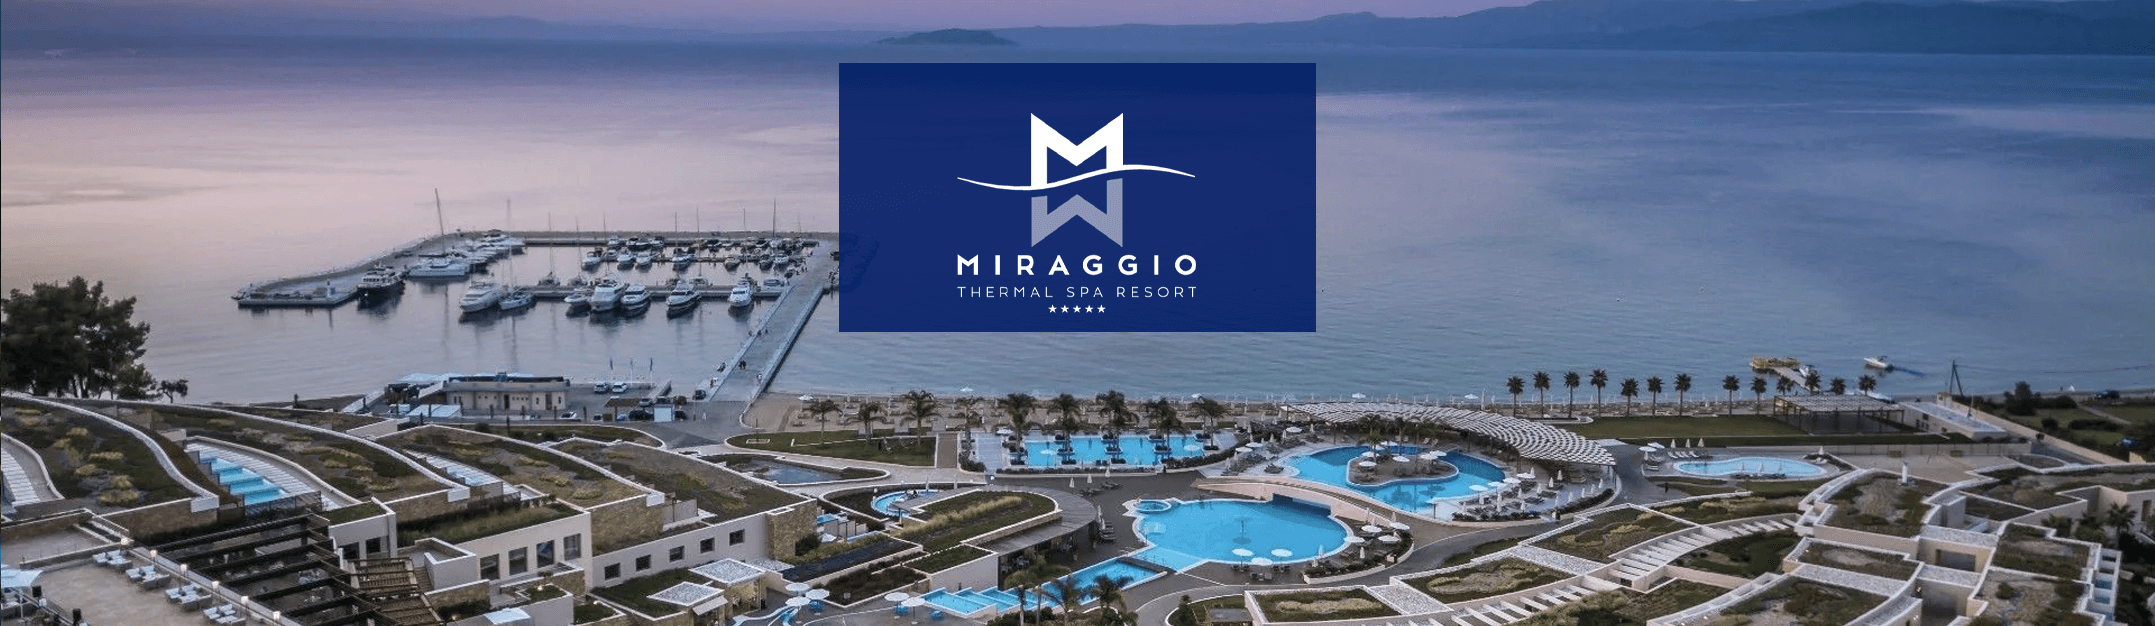 Miraggio Thermal SPA Resort